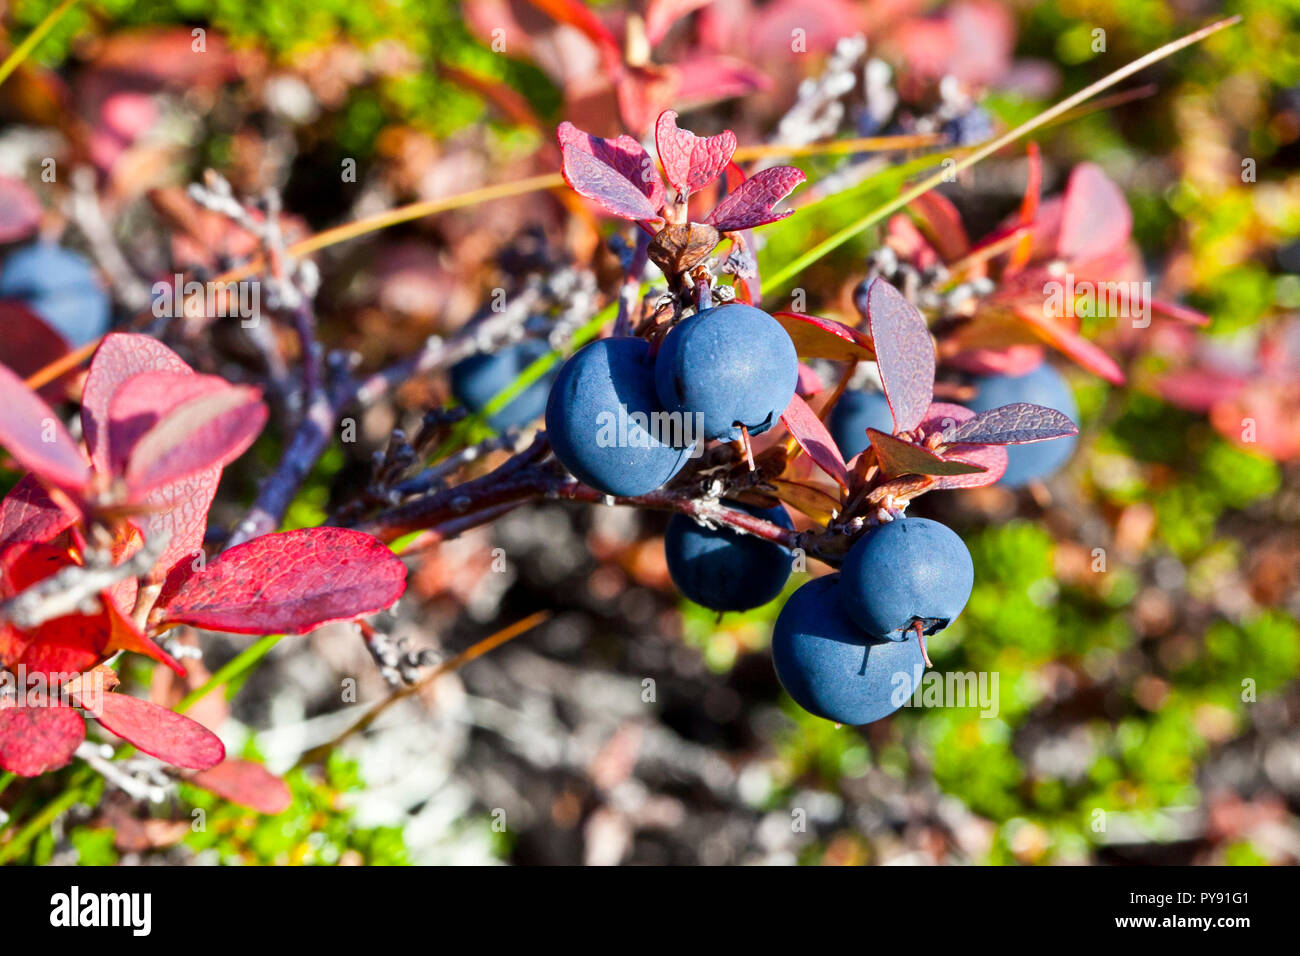 wild blueberry Stock Photo